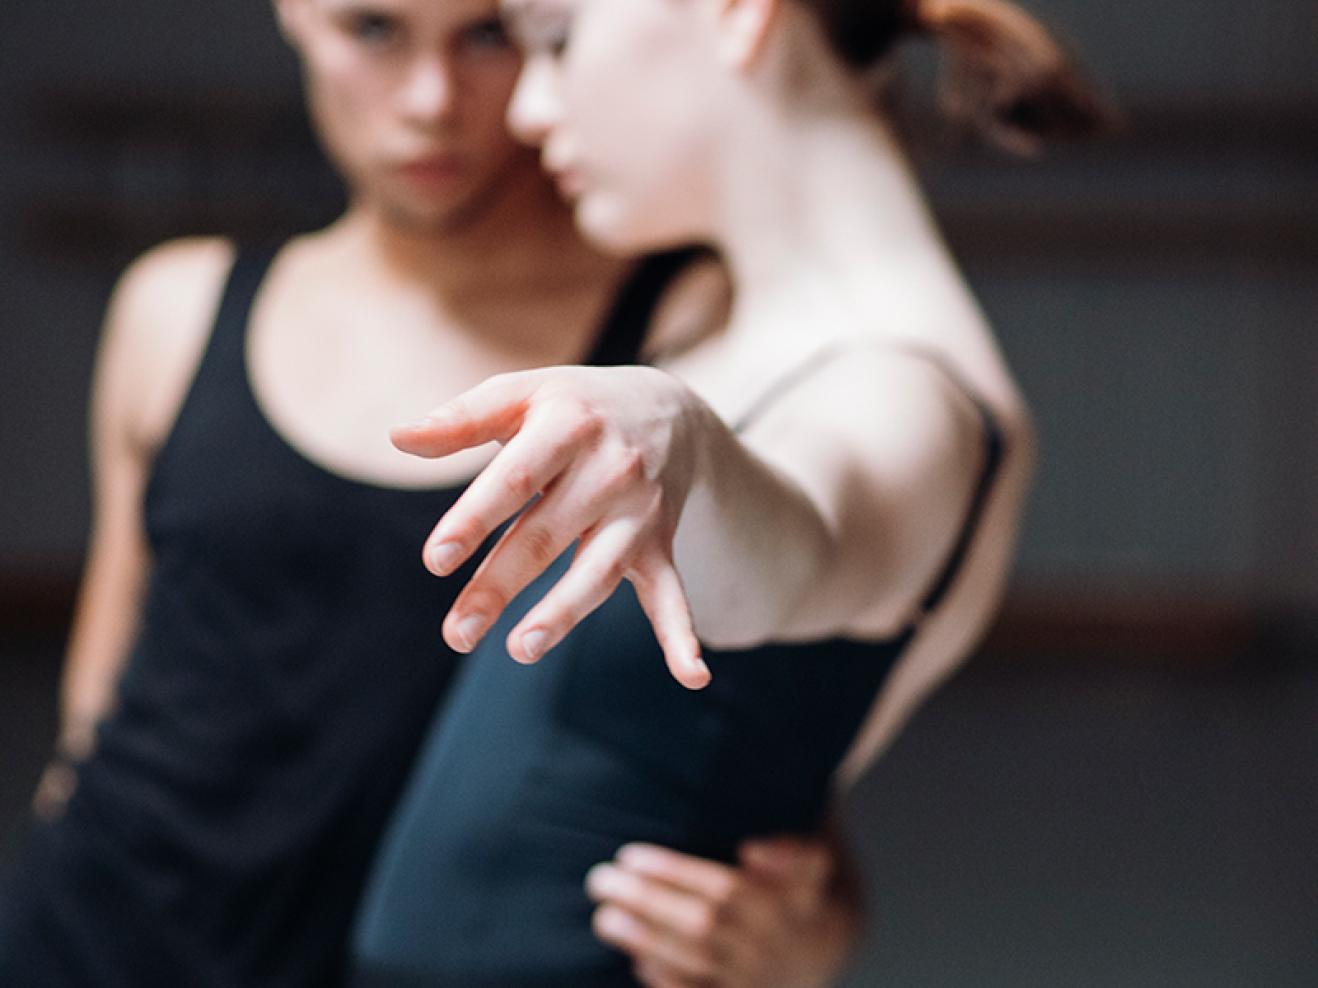 Ein Tänzer hält eine Tänzerin im Arm, sie streckt ihre Hand zur Kamera. Diese ist im Fokus